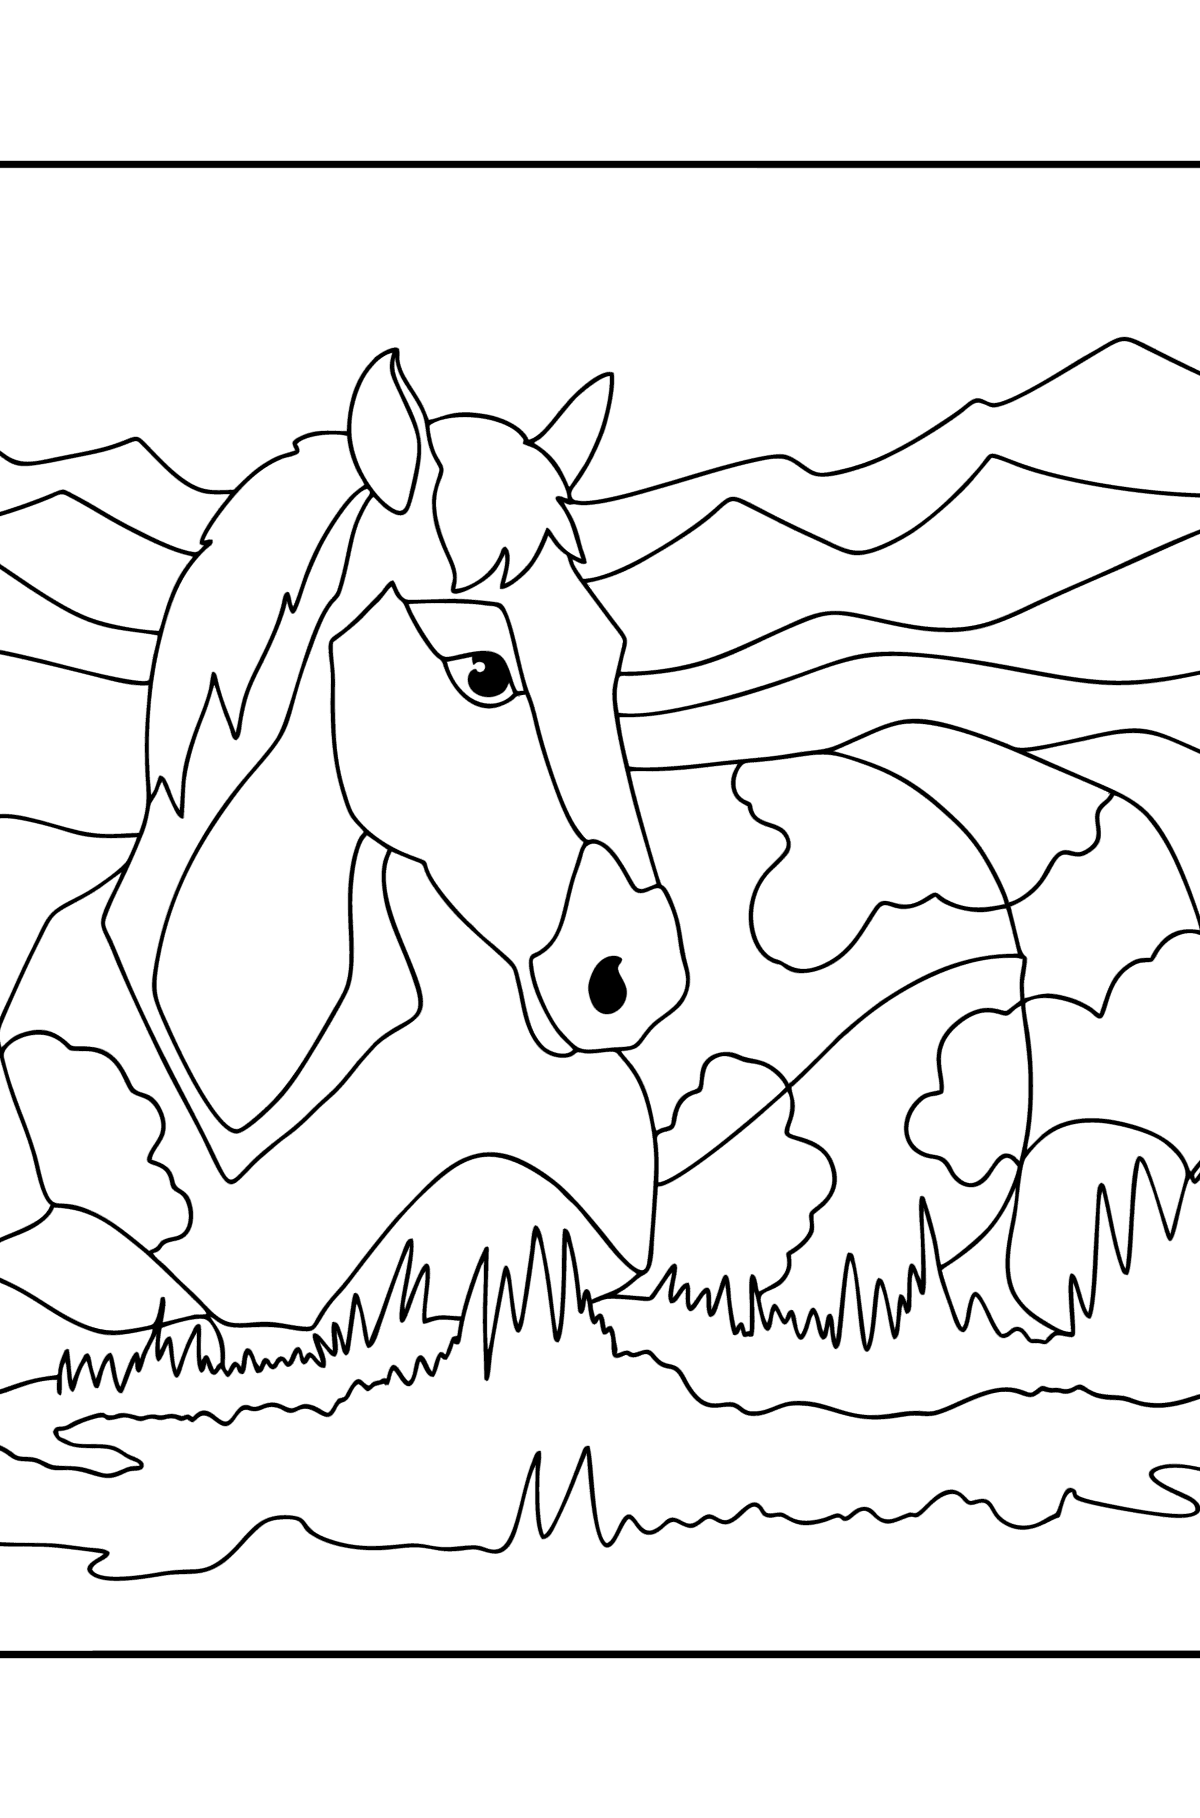 Kleurplaat Slapend paard - kleurplaten voor kinderen